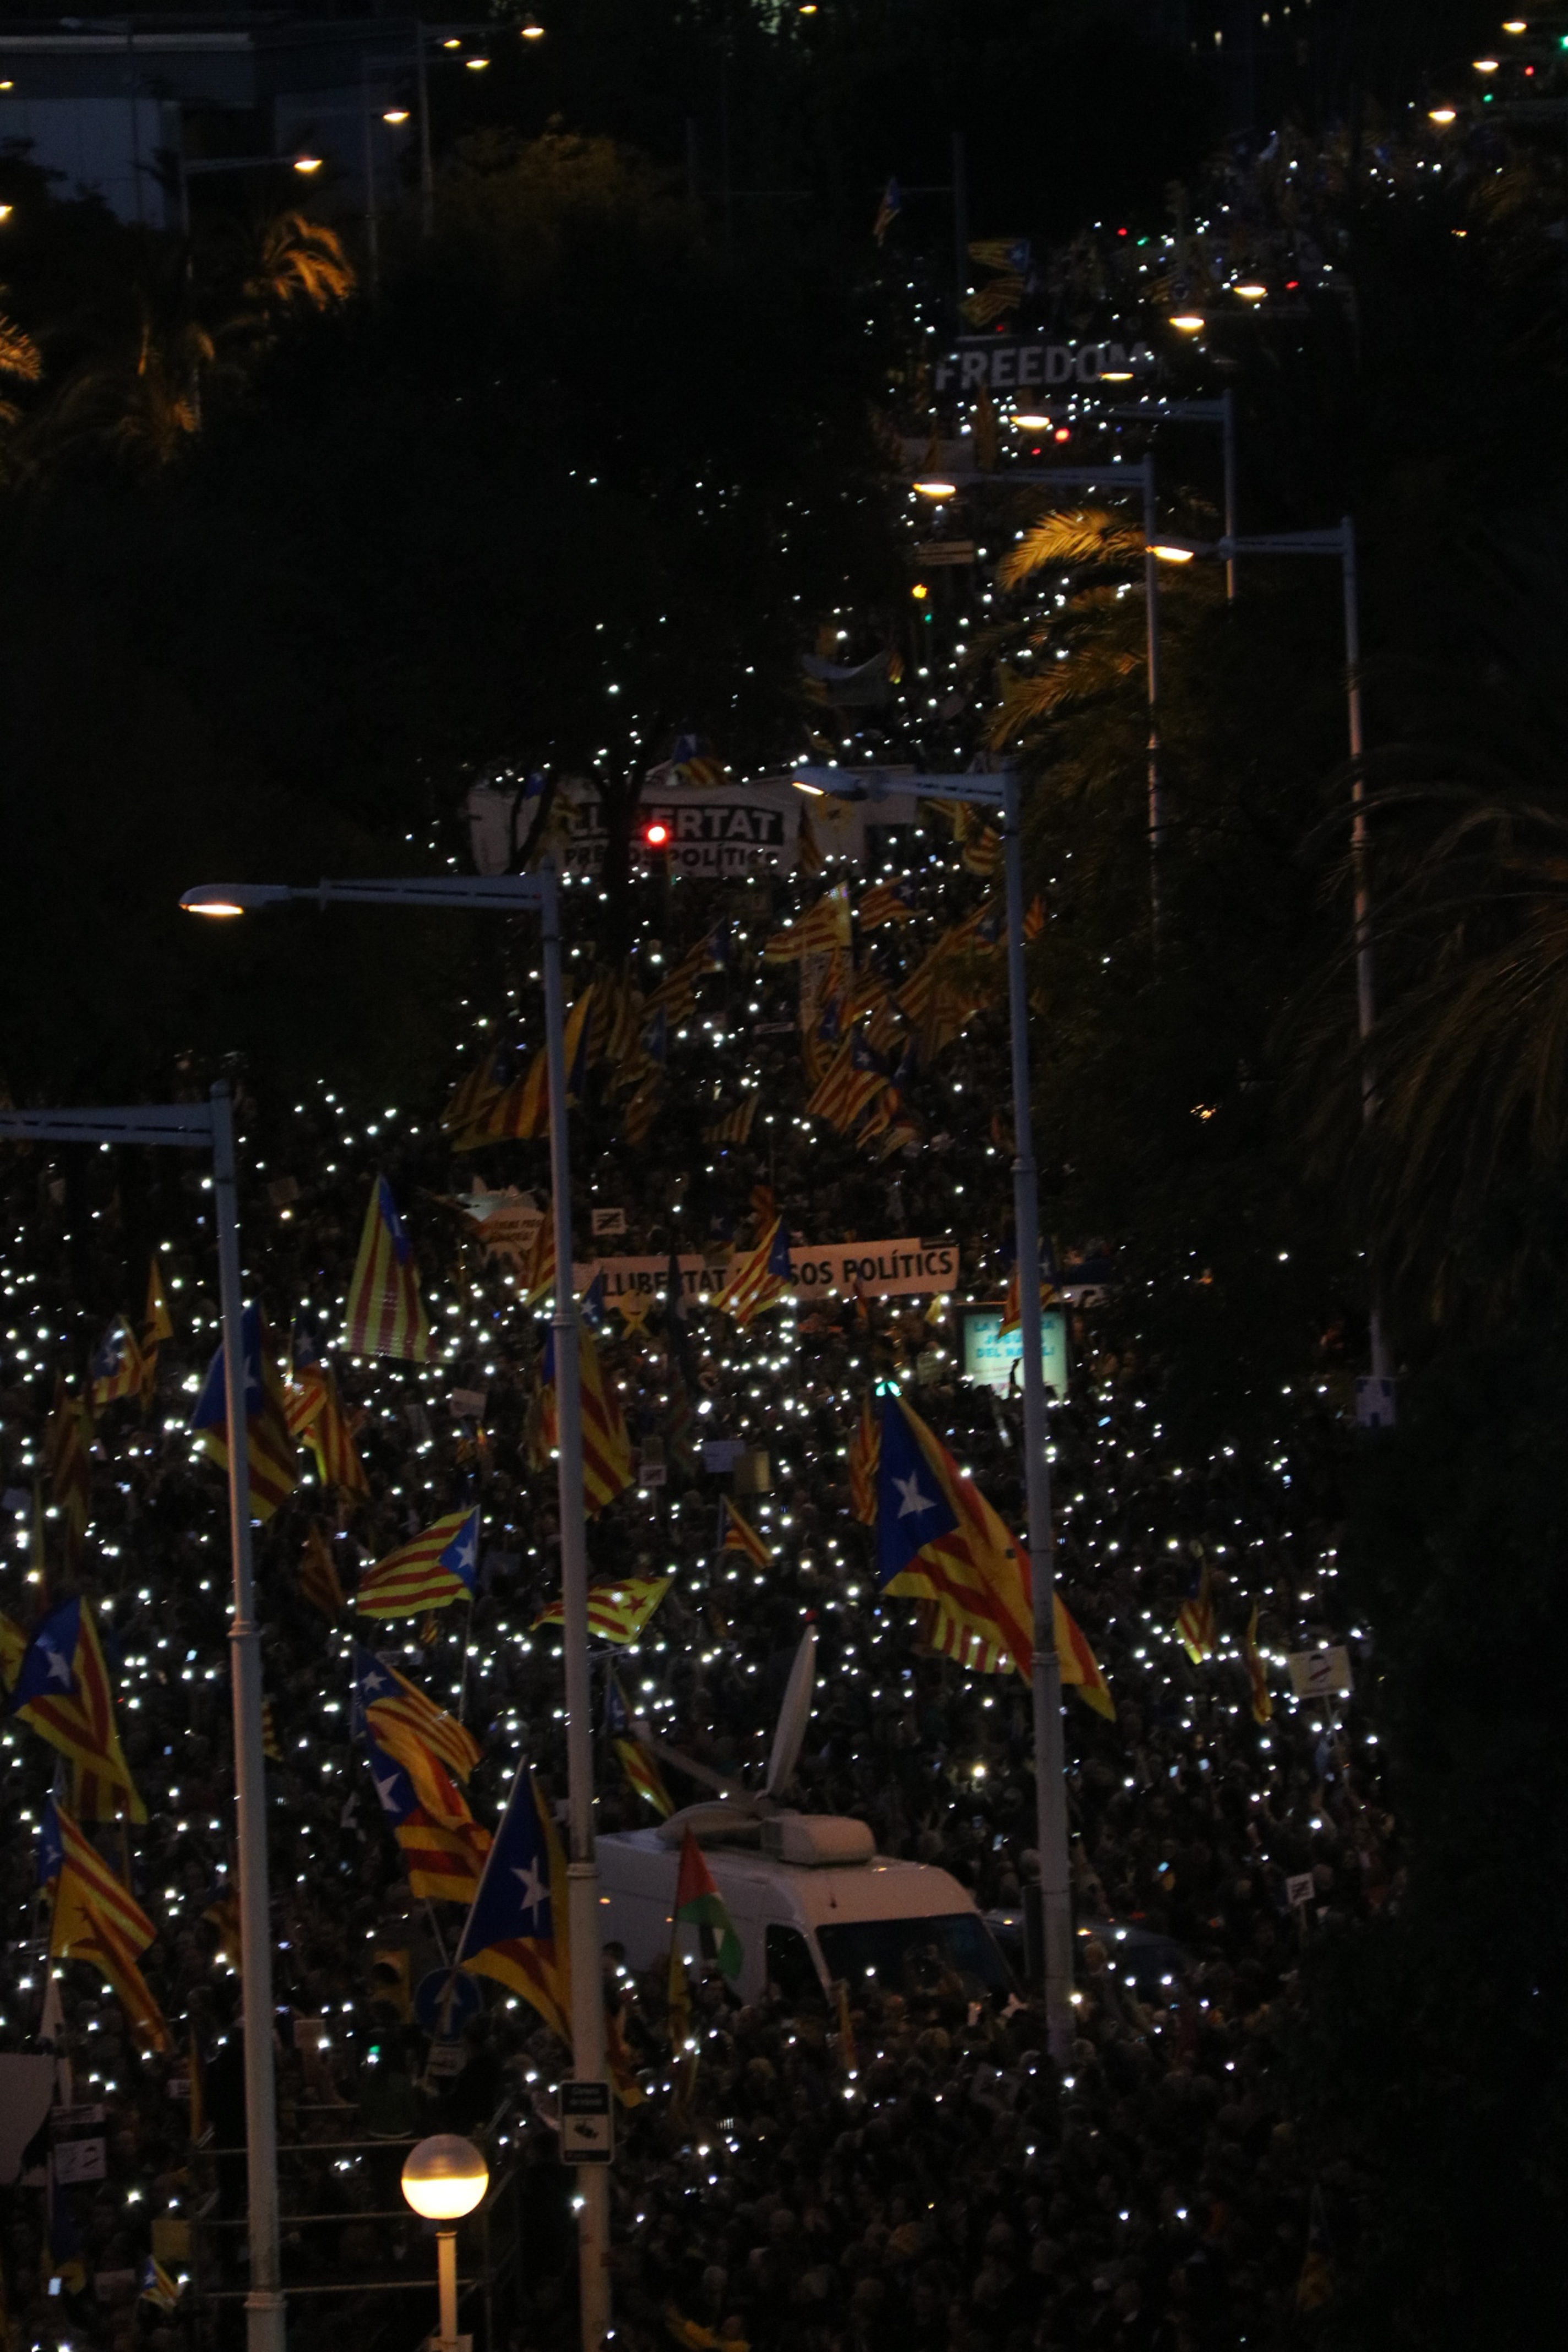 "Els catalans caminem"